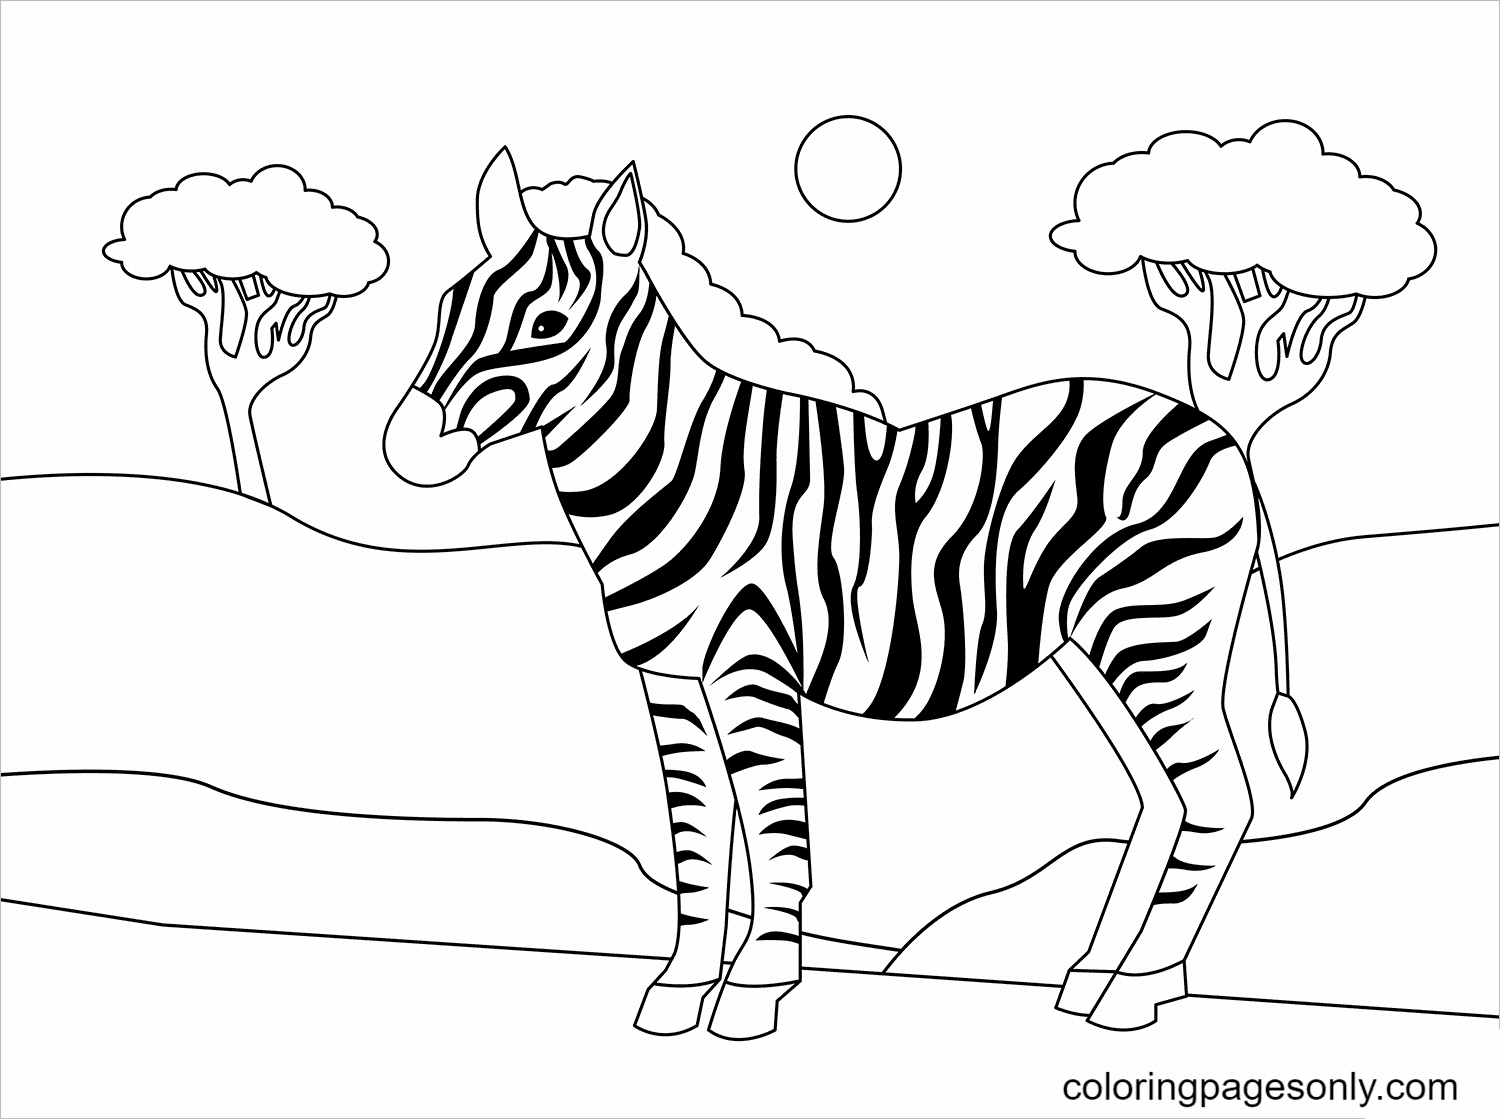 Ormanda a Zebra Coloring Page